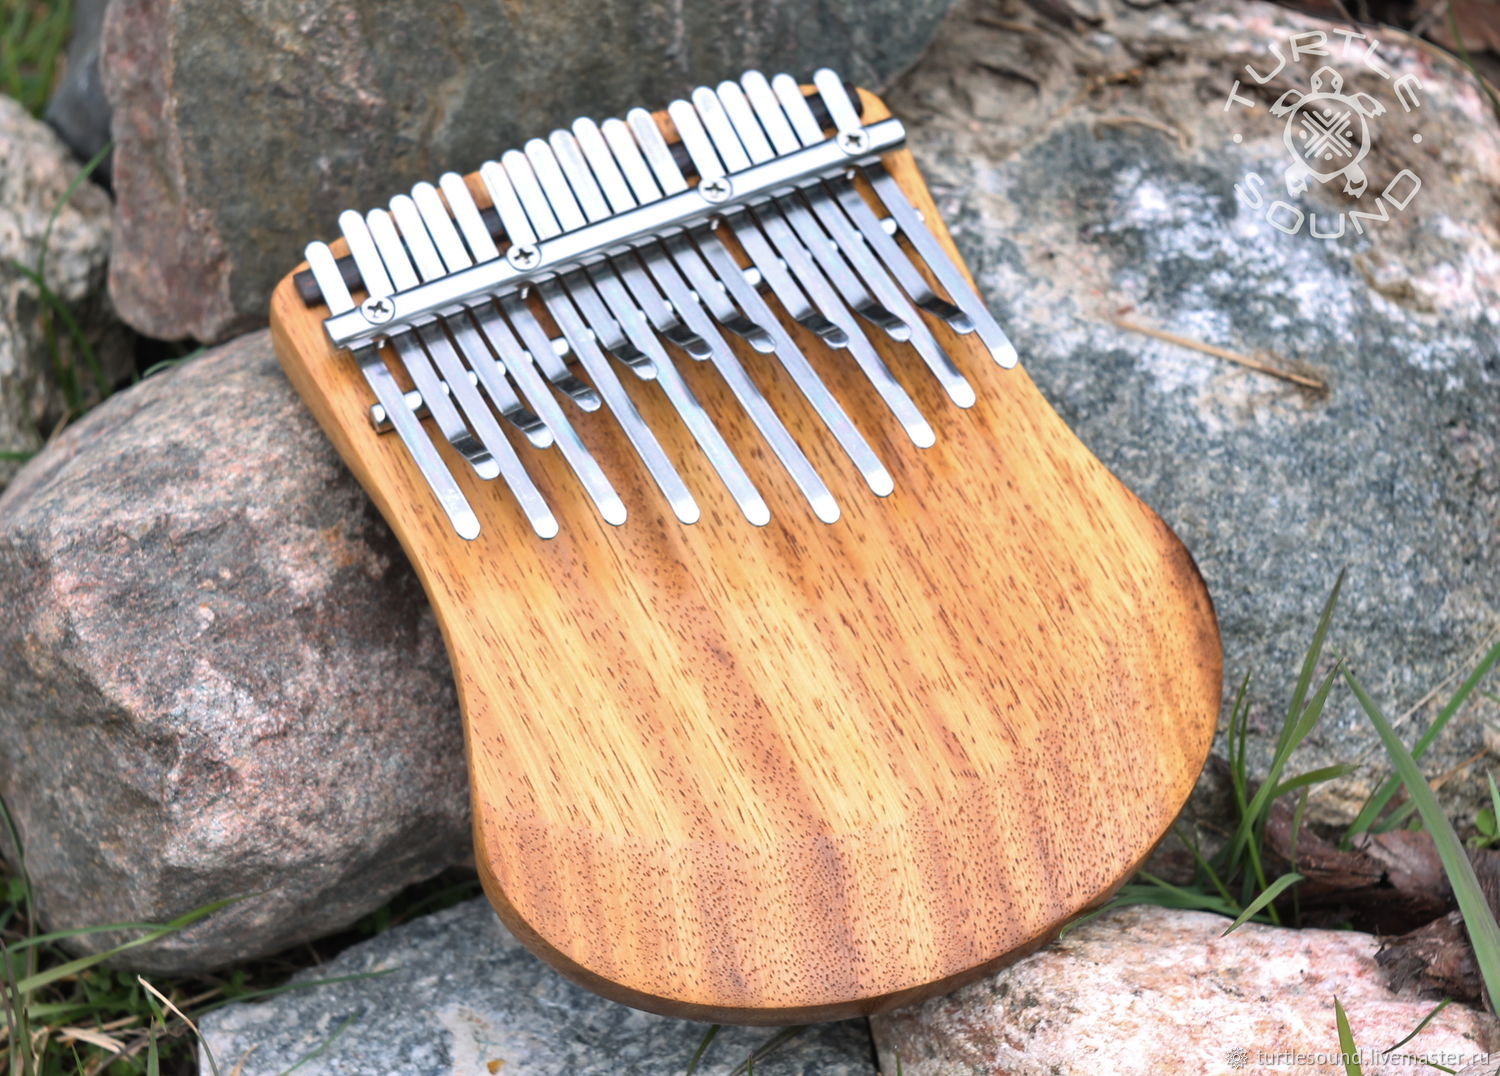 Что такое калимба. Калимба Мозеръ Florin kmkm-2. Каримба музыкальный инструмент. Калимба каримба Ducat kmkm-1. Калимба Африканская аутентичная.